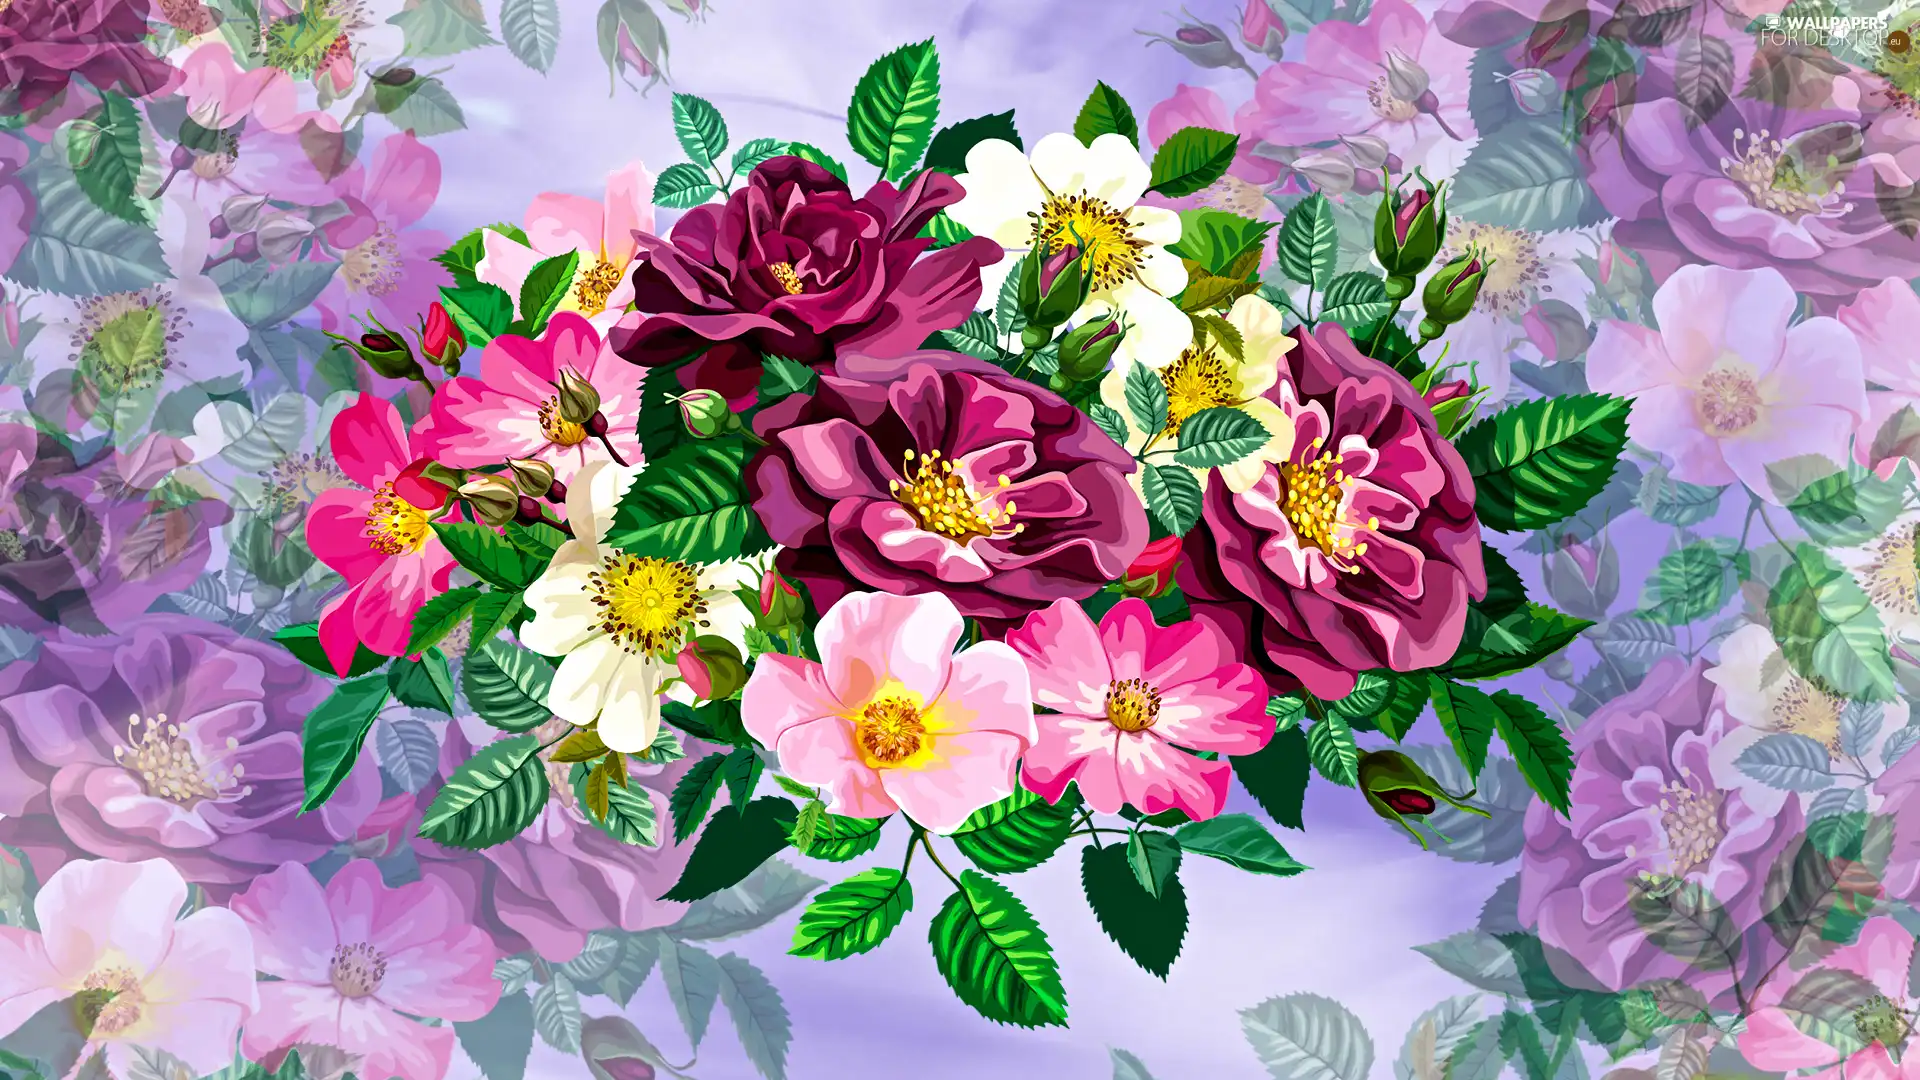 2D Graphics, Flowers, bouquet